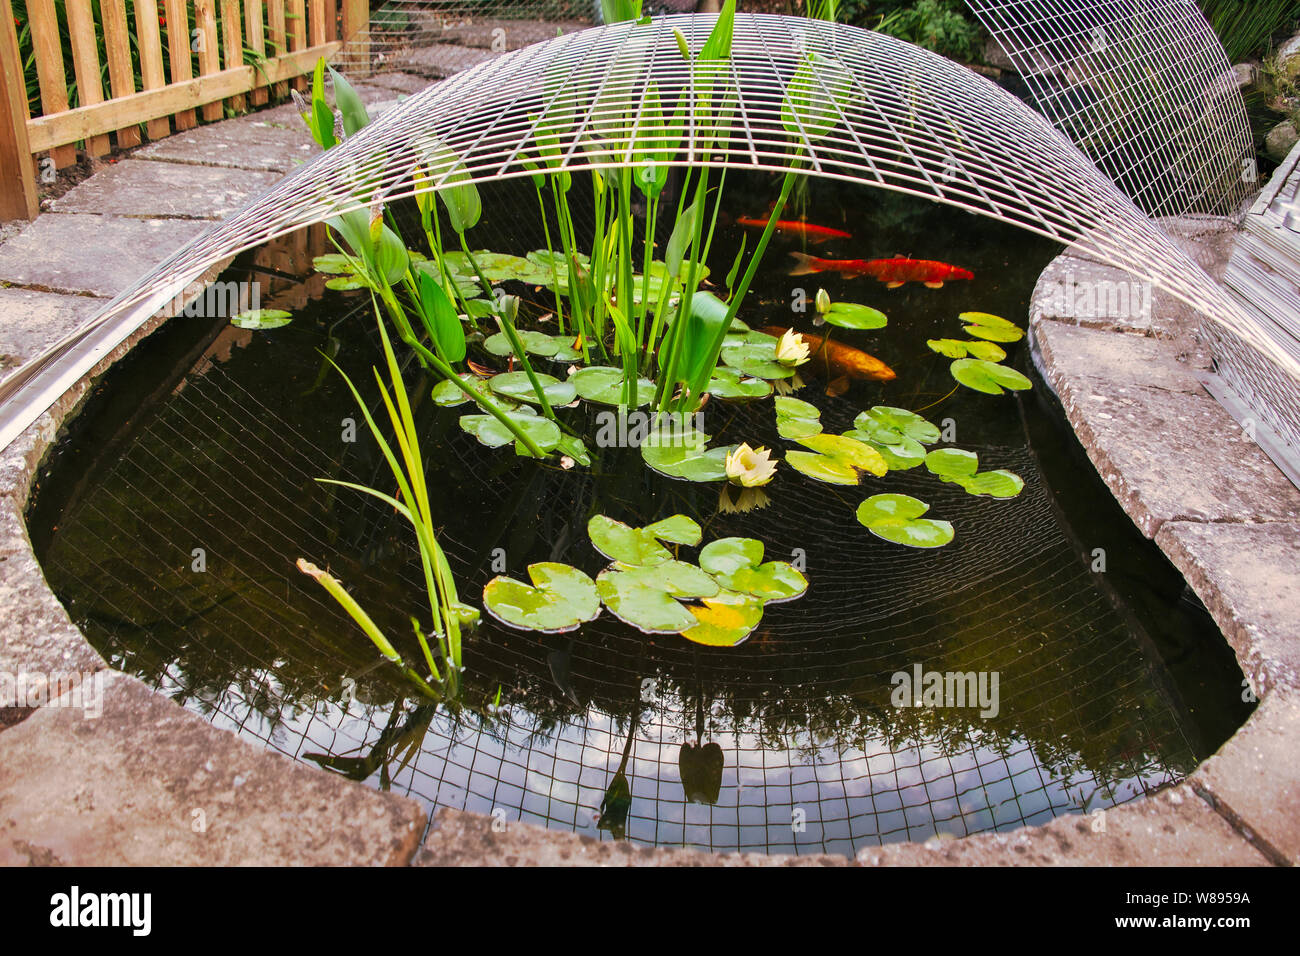 Koi Karpfen Teich in einem Garten oder Hof mit einem Metallgerüst Deckel  als Schutz gegen Reiher. Es gibt Lilien und Wasser Pflanzen und koi Karpfen  in Th Stockfotografie - Alamy